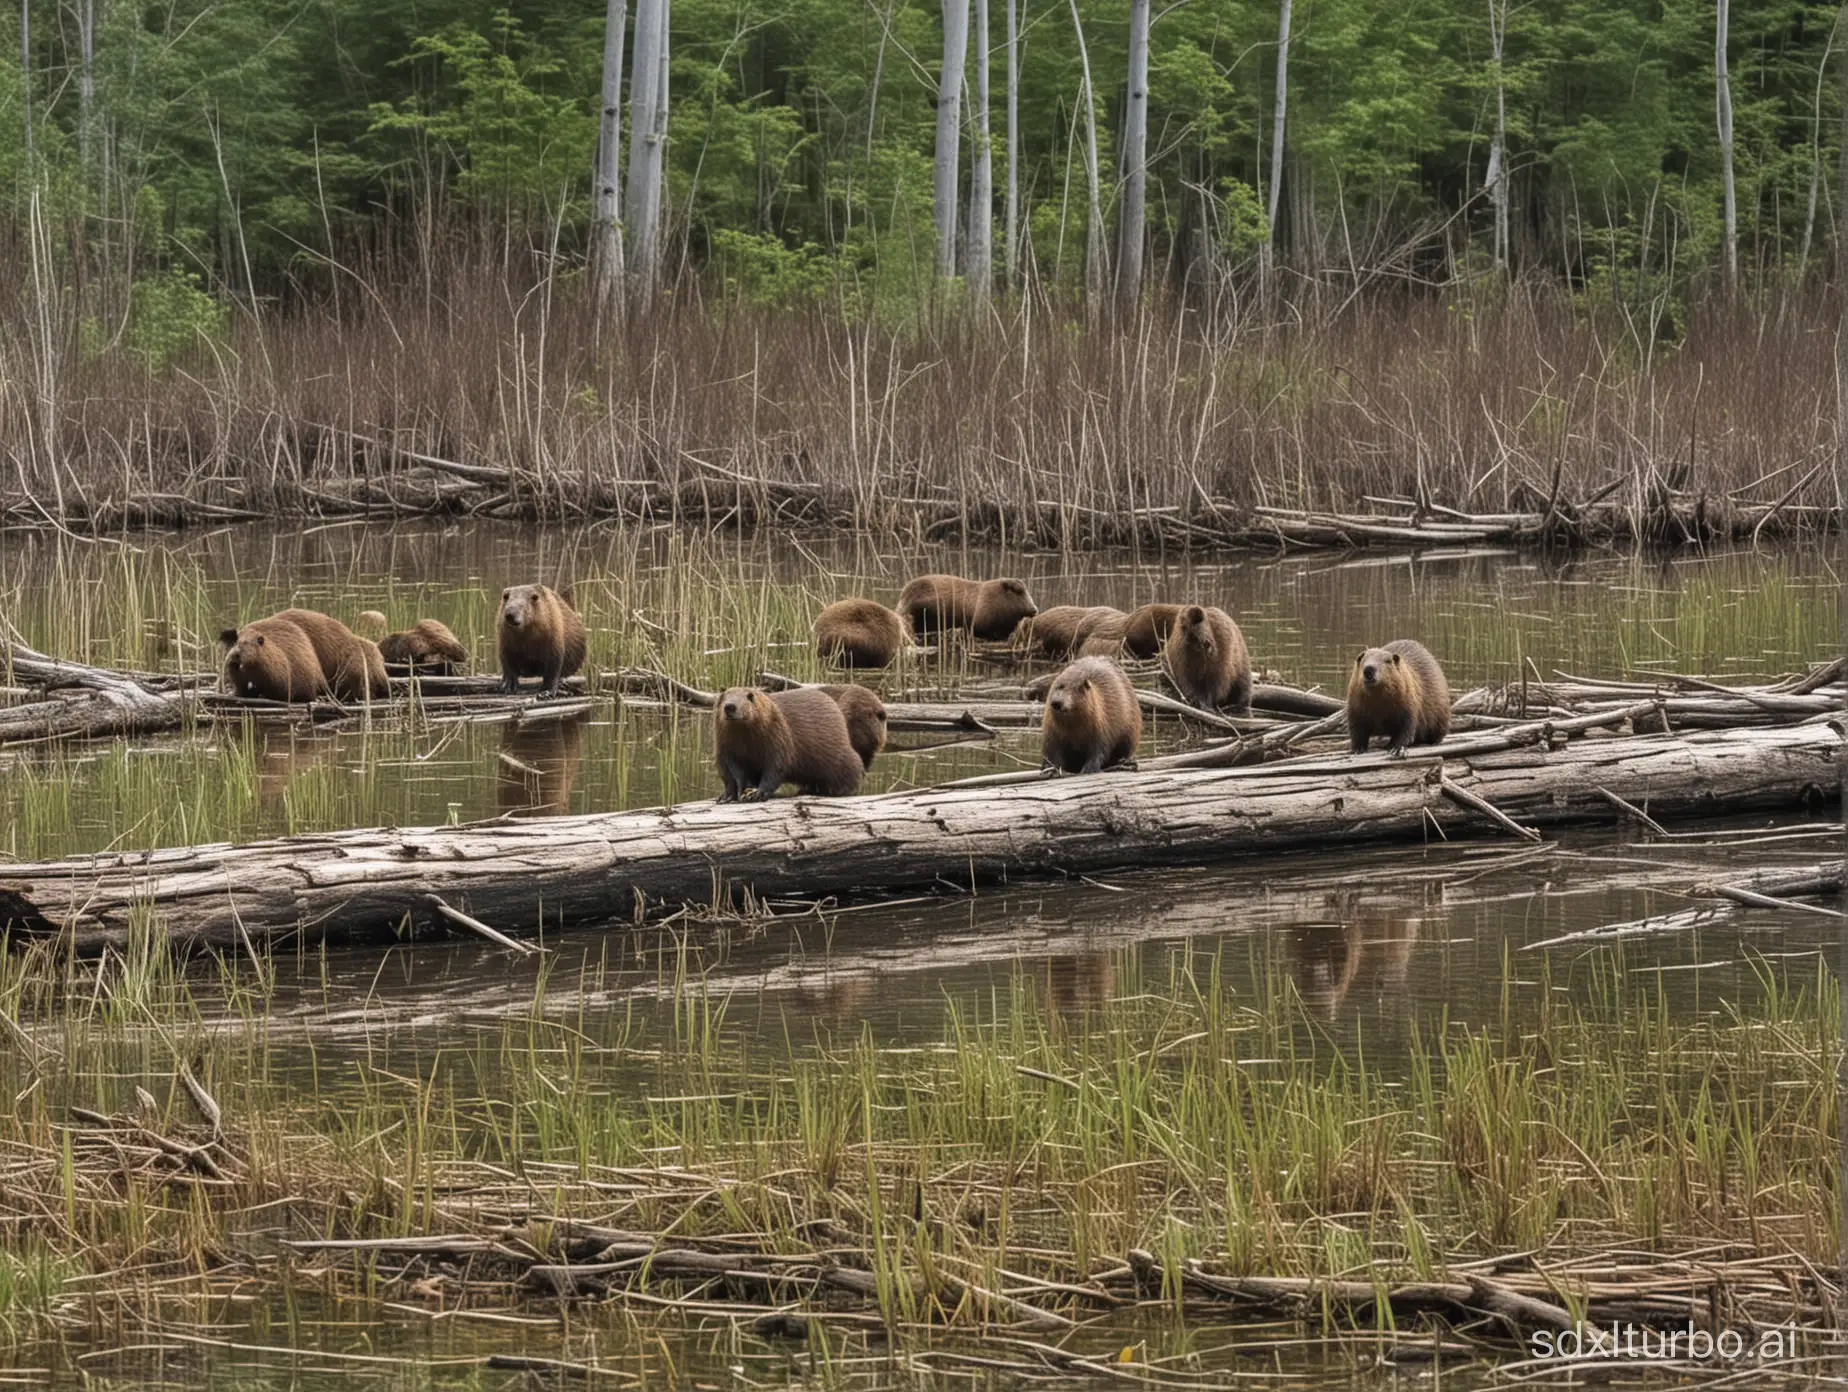 A few logging beavers